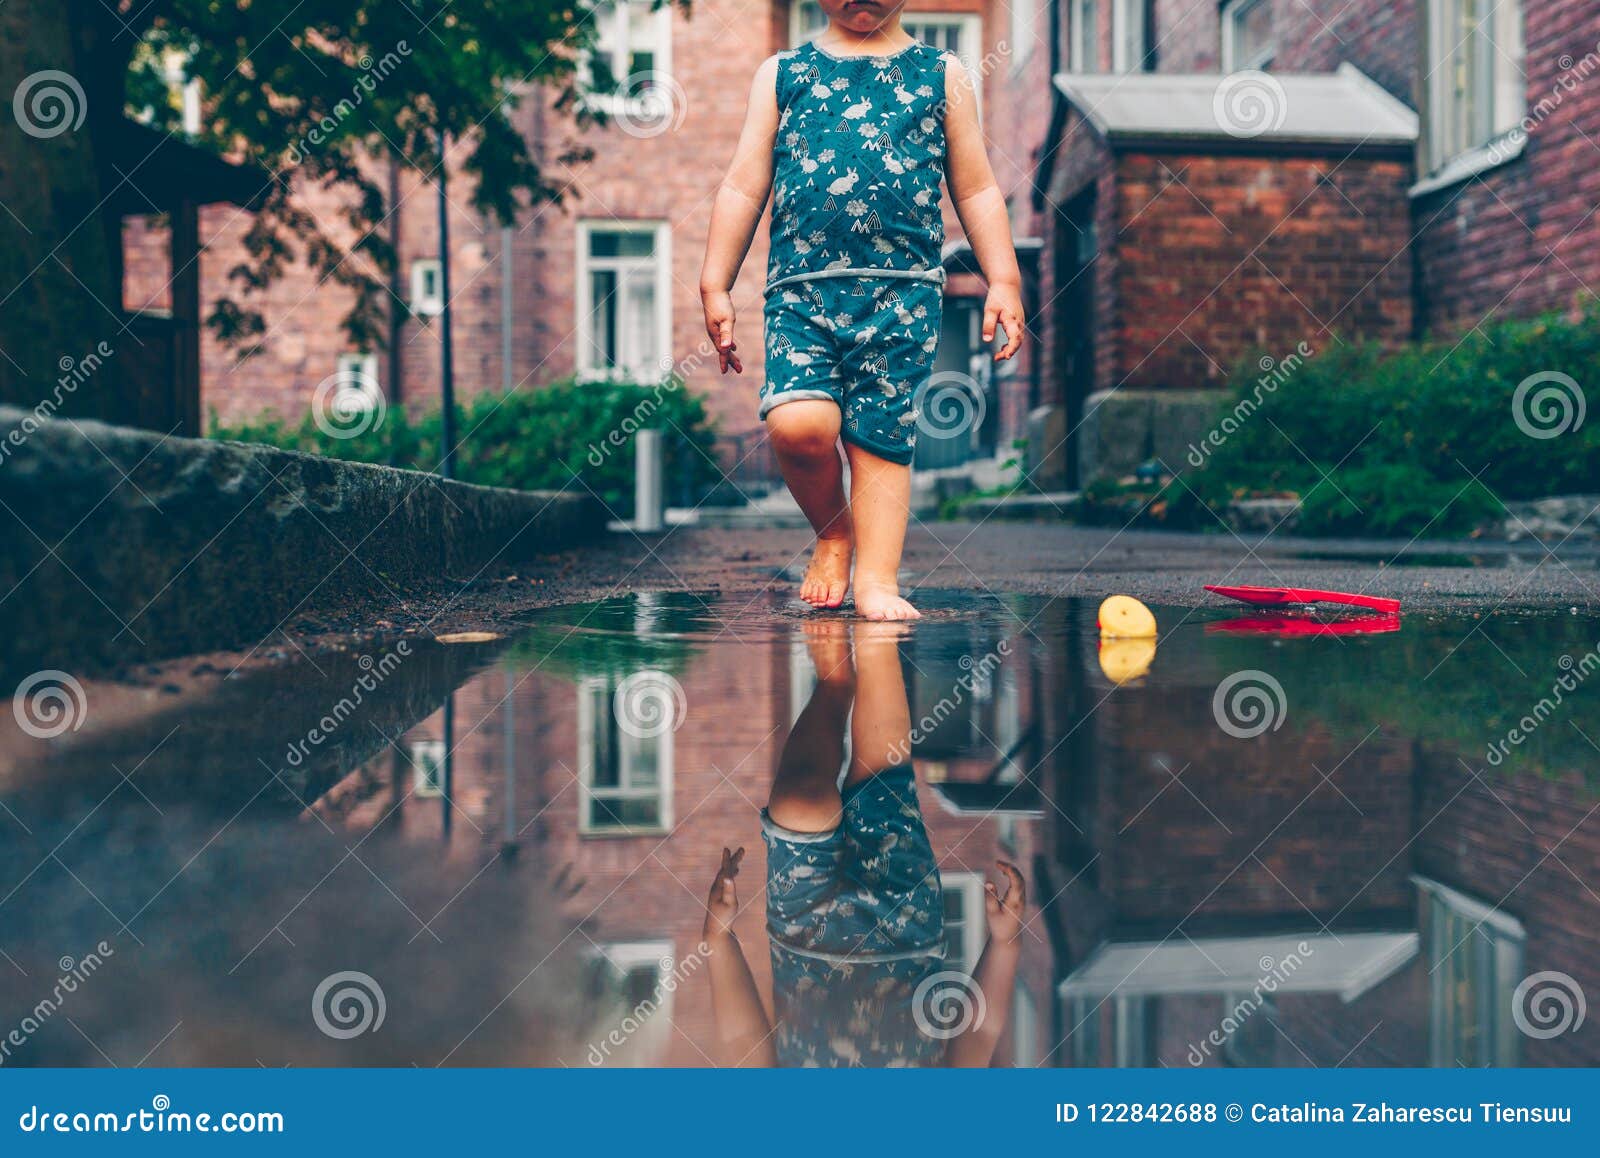 穿红色雨靴的孩子跳进水坑里。闭合。孩子在玩水玩得很开心。温暖的夏雨和快乐的孩子。。图片免费下载-5001747012-千图网Pro